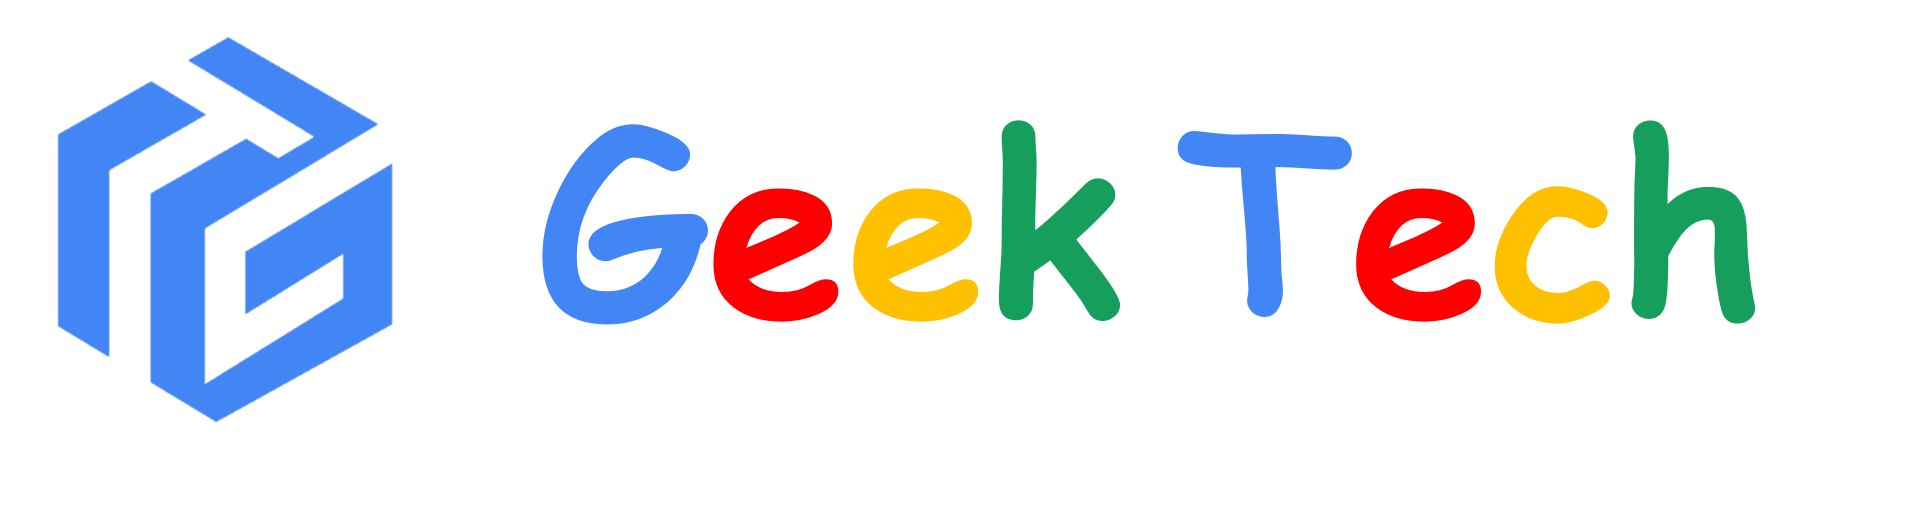 GeekTech | 极客技术分享博客